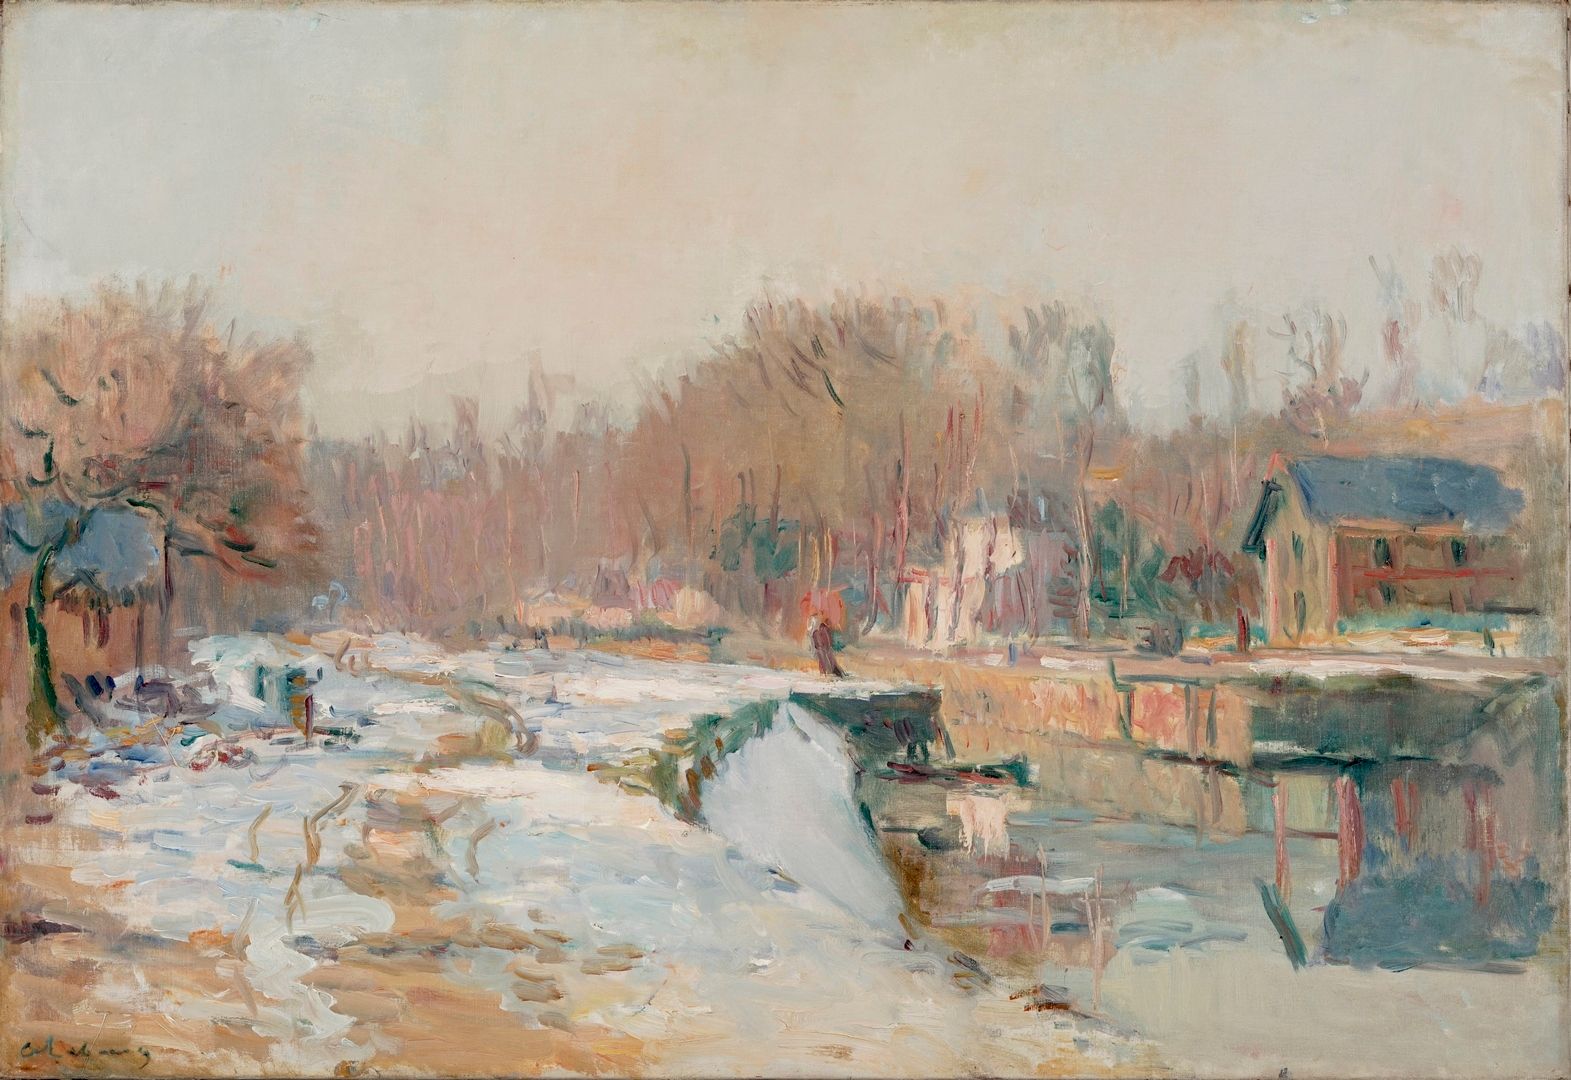 Null 勒布尔阿尔贝, 1849-1928
水闸，马恩河运河上的雪景
布面油画（略有修复），左下方有签名，背面有编号 D9208 的标签和让-德-鲁阿兹画廊的&hellip;